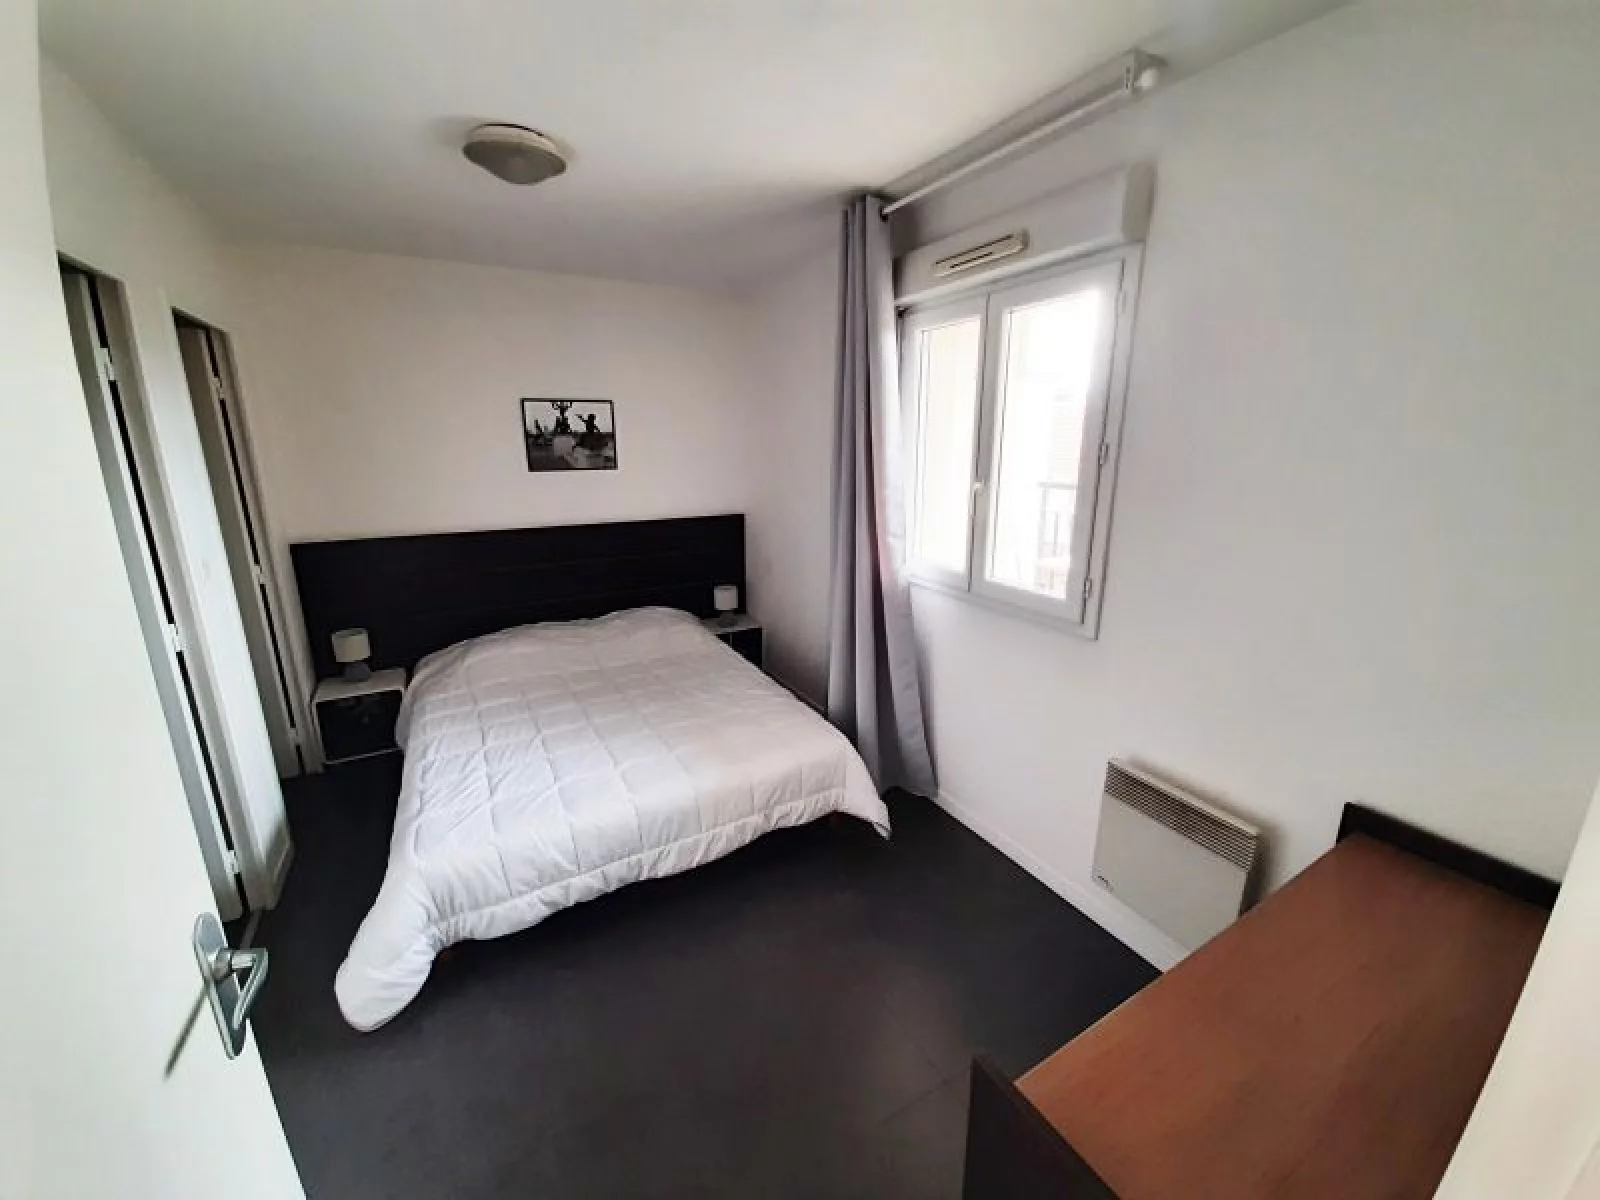 Location appartement meublé 2 pièces 43m² (Paris est - Bry sur Marne)